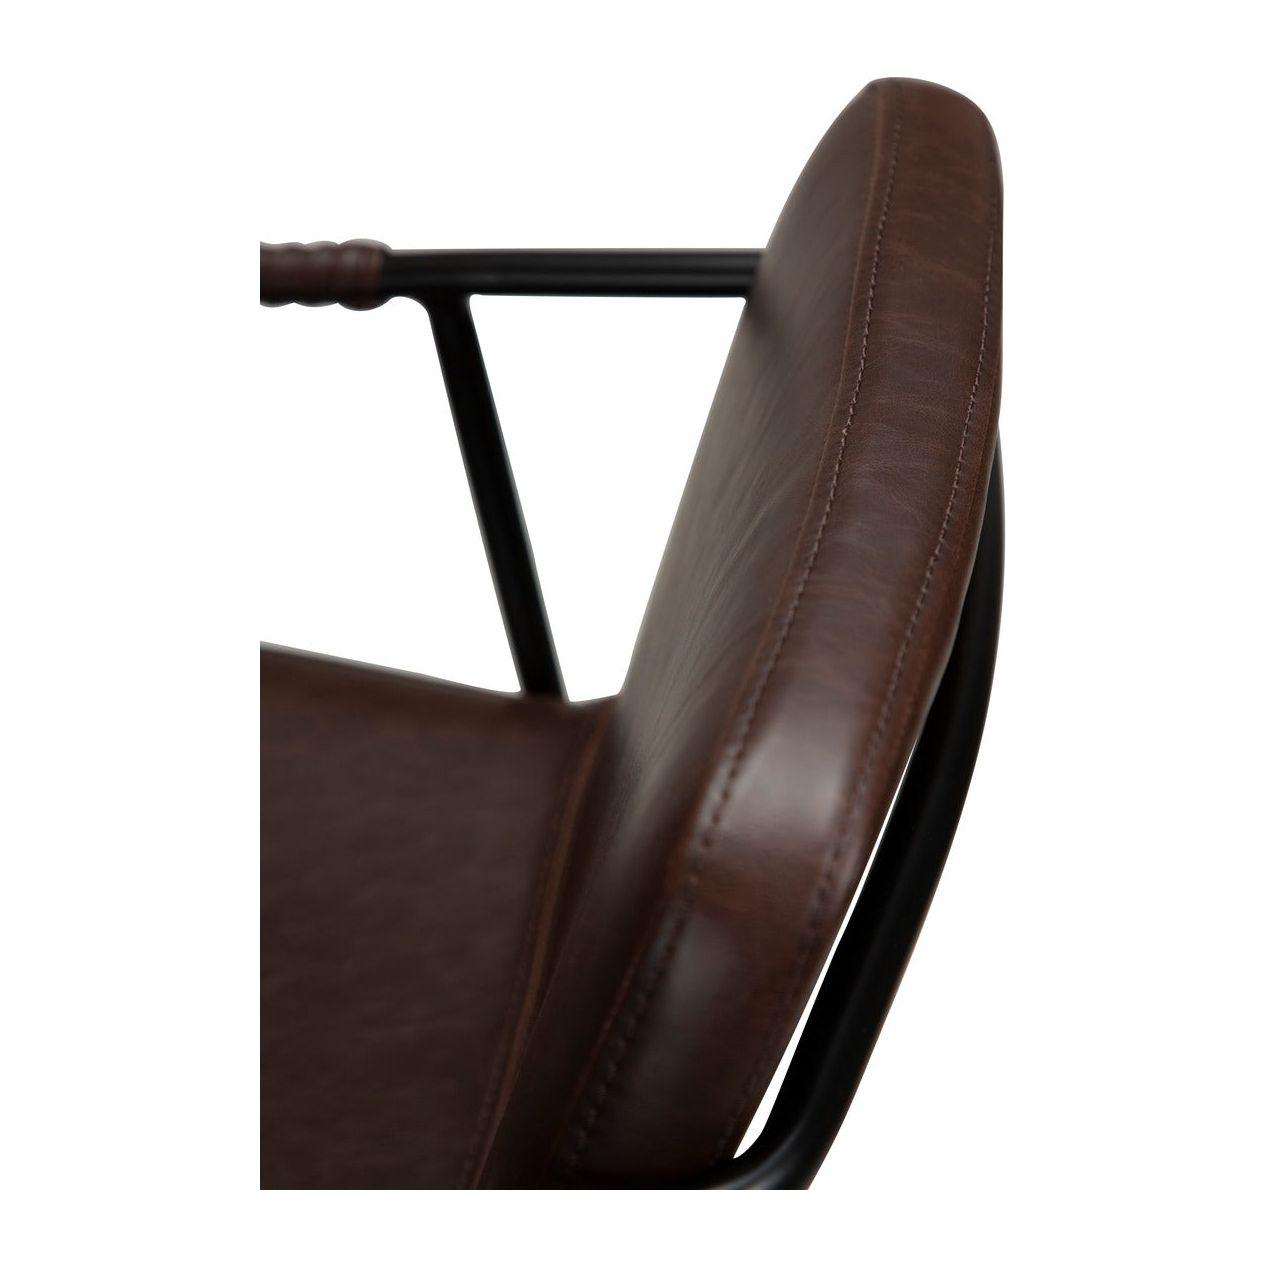 BOTO baro kėdė, tamsiai ruda spalva